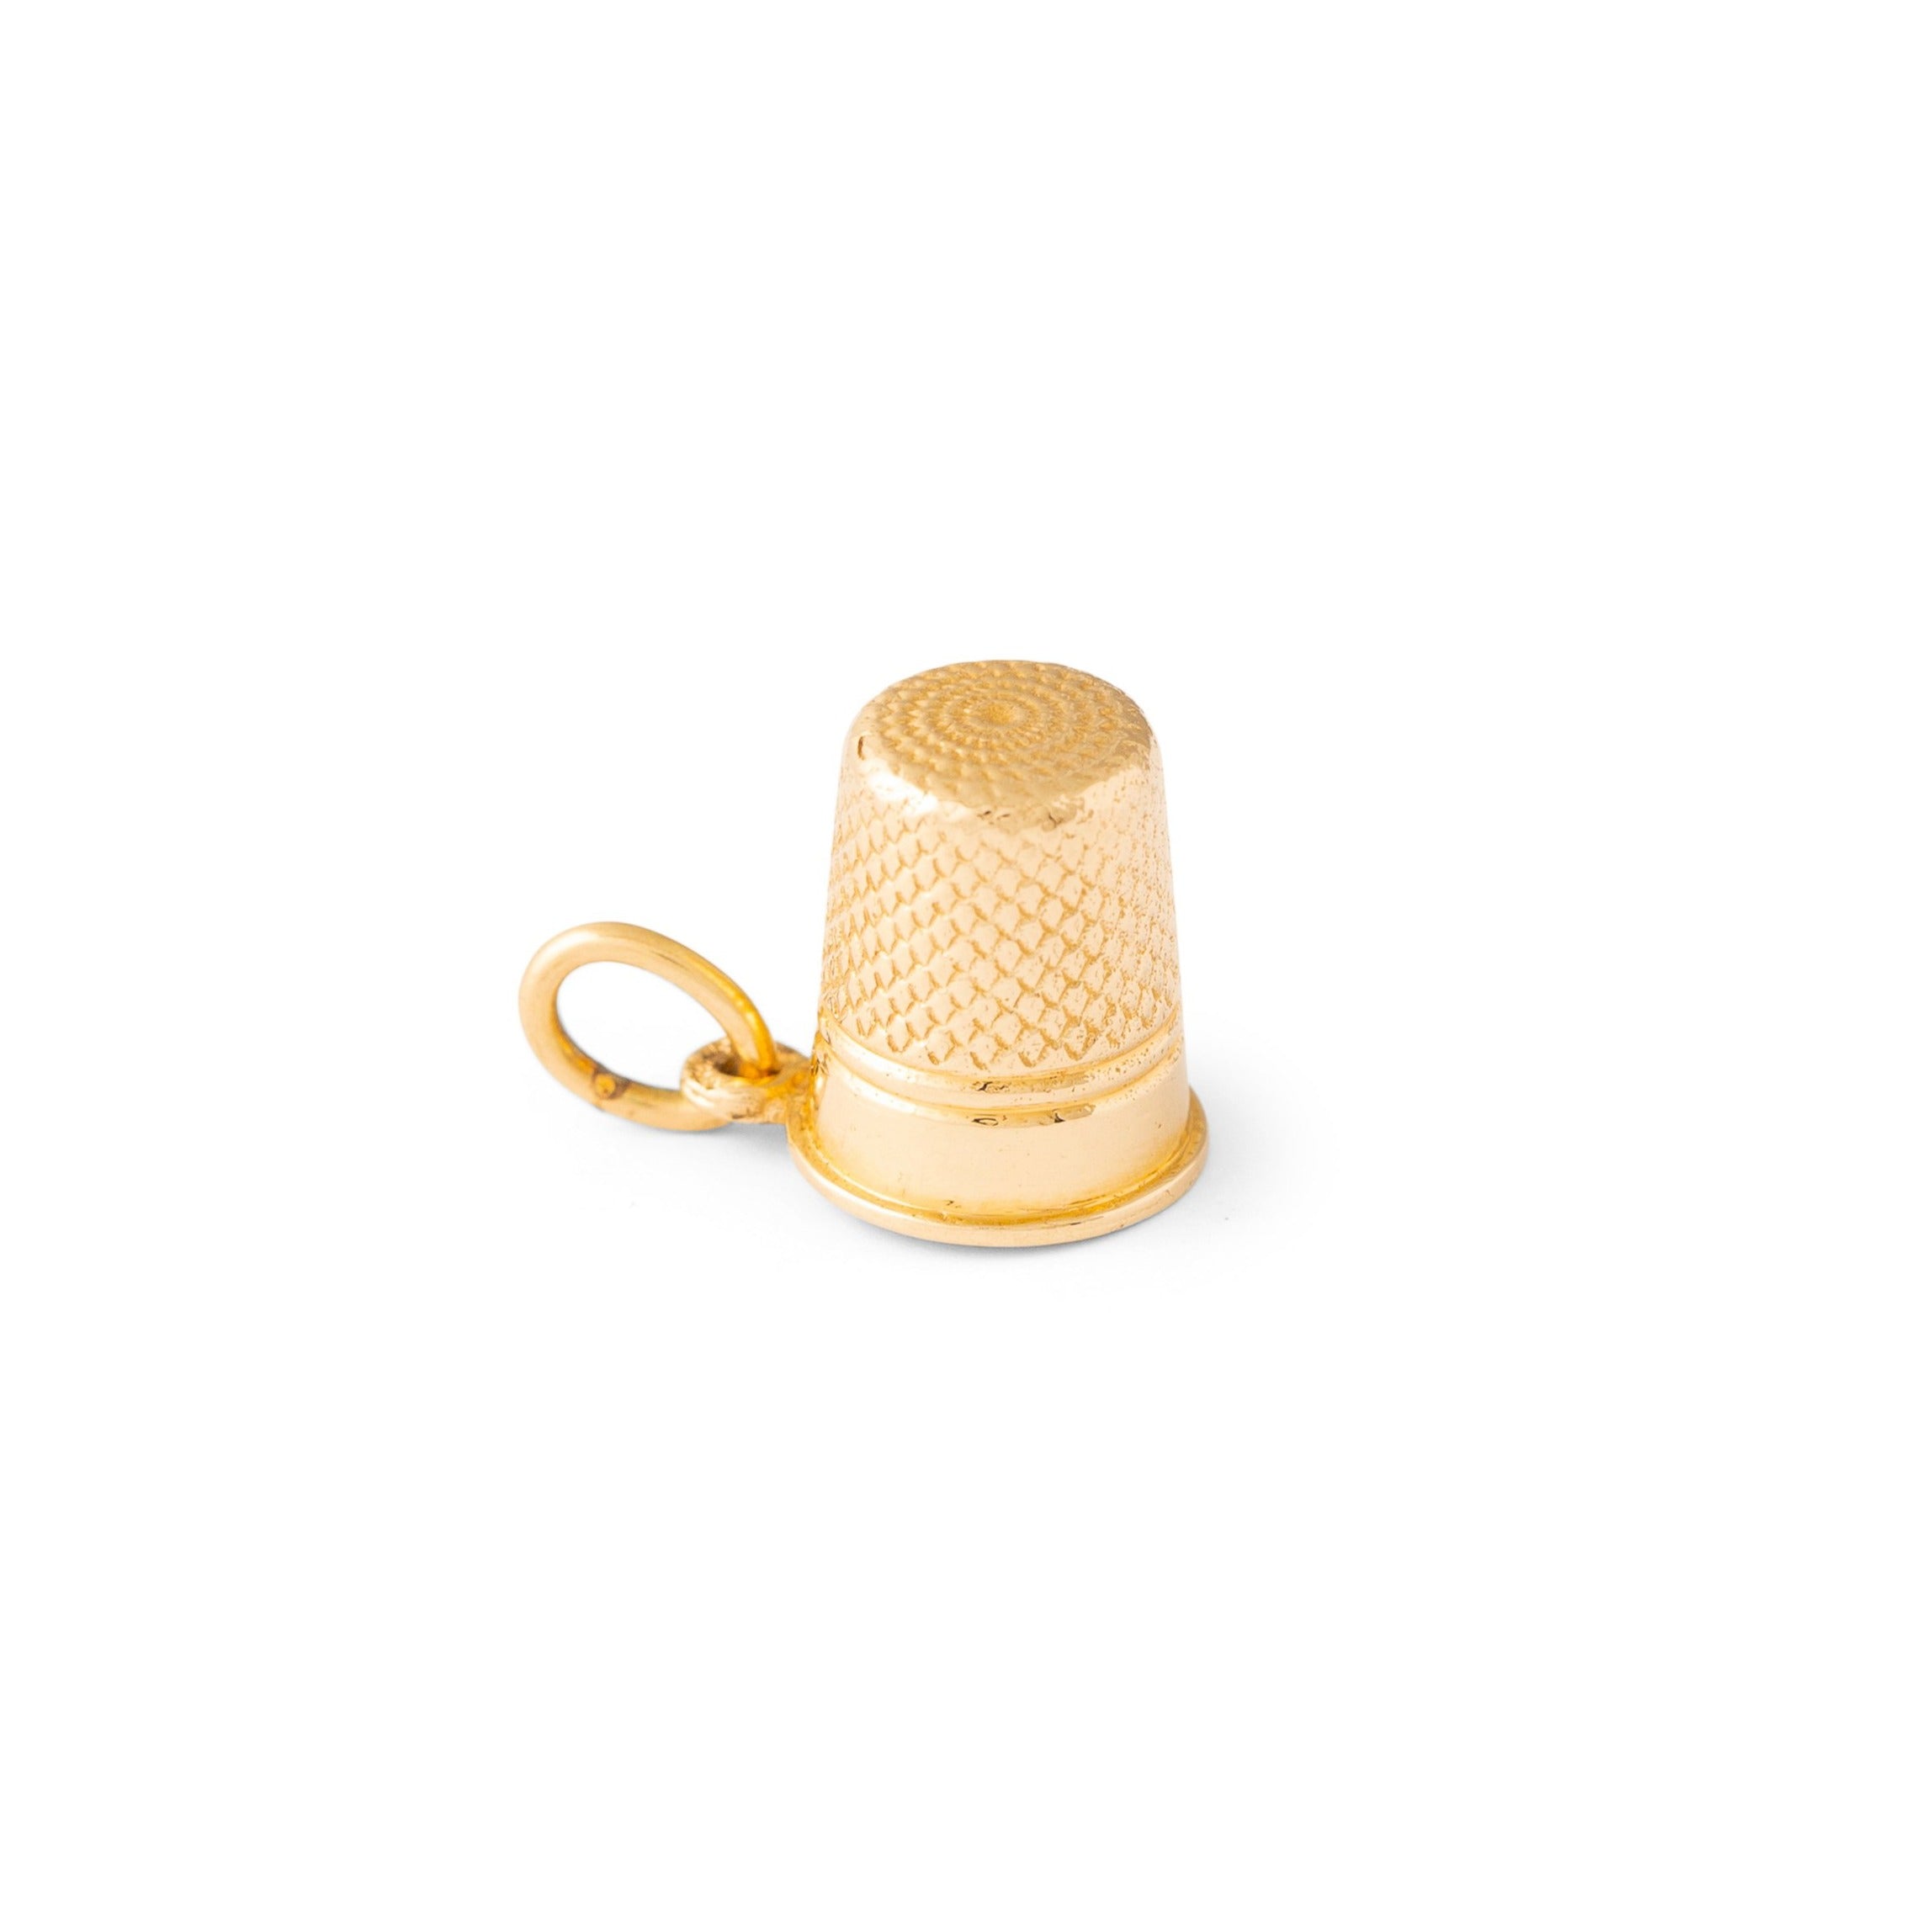 Sloan & Co. Thimble 14k Gold Charm